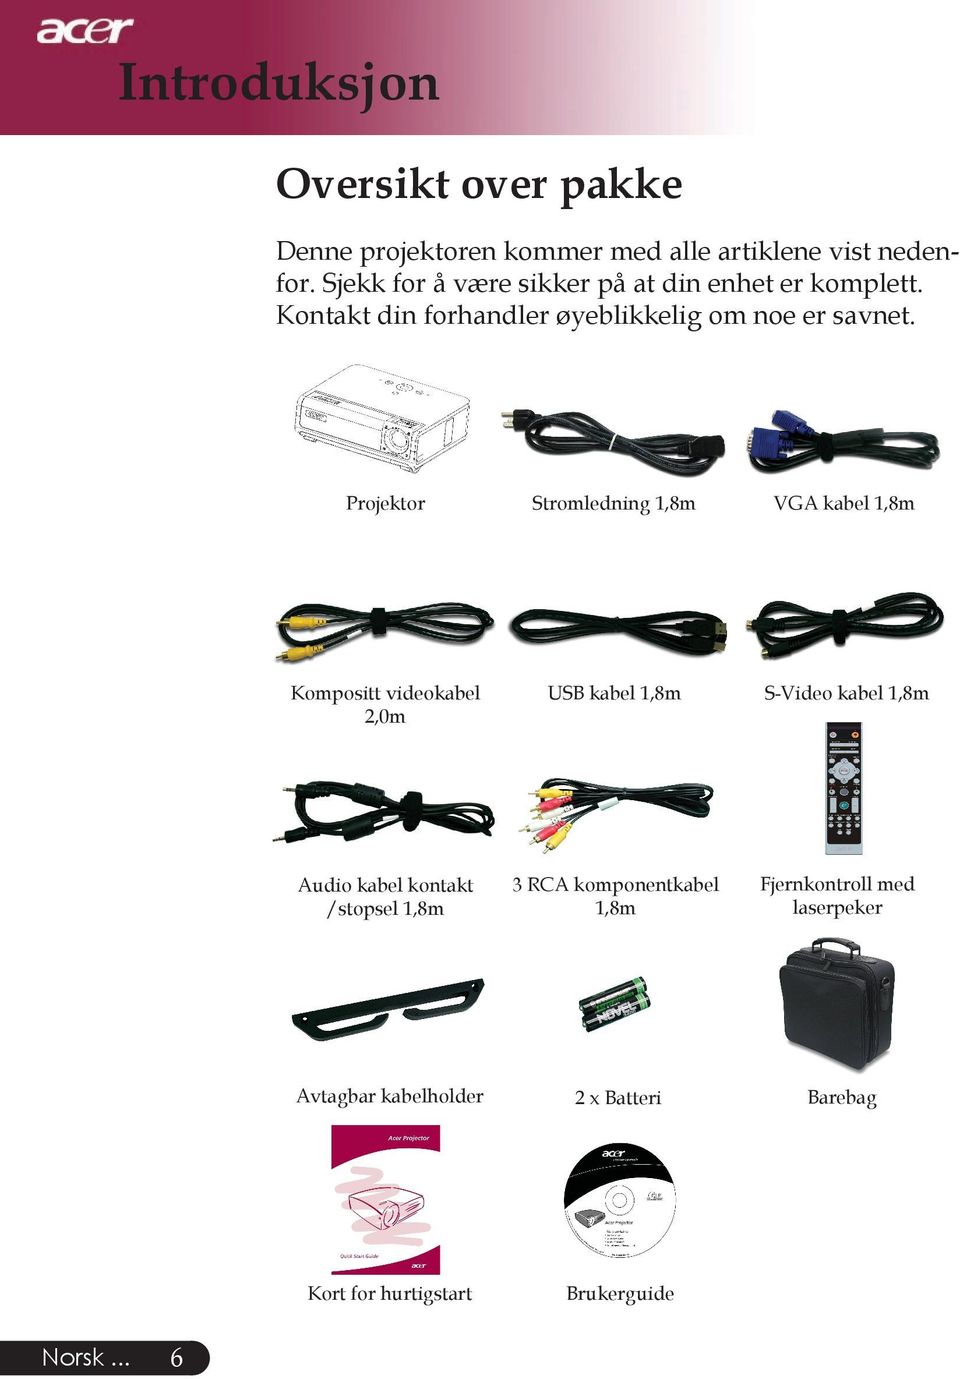 .. Projektor Stromledning 1,8m VGA kabel 1,8m Kompositt videokabel 2,0m USB kabel 1,8m S-Video kabel 1,8m Audio kabel